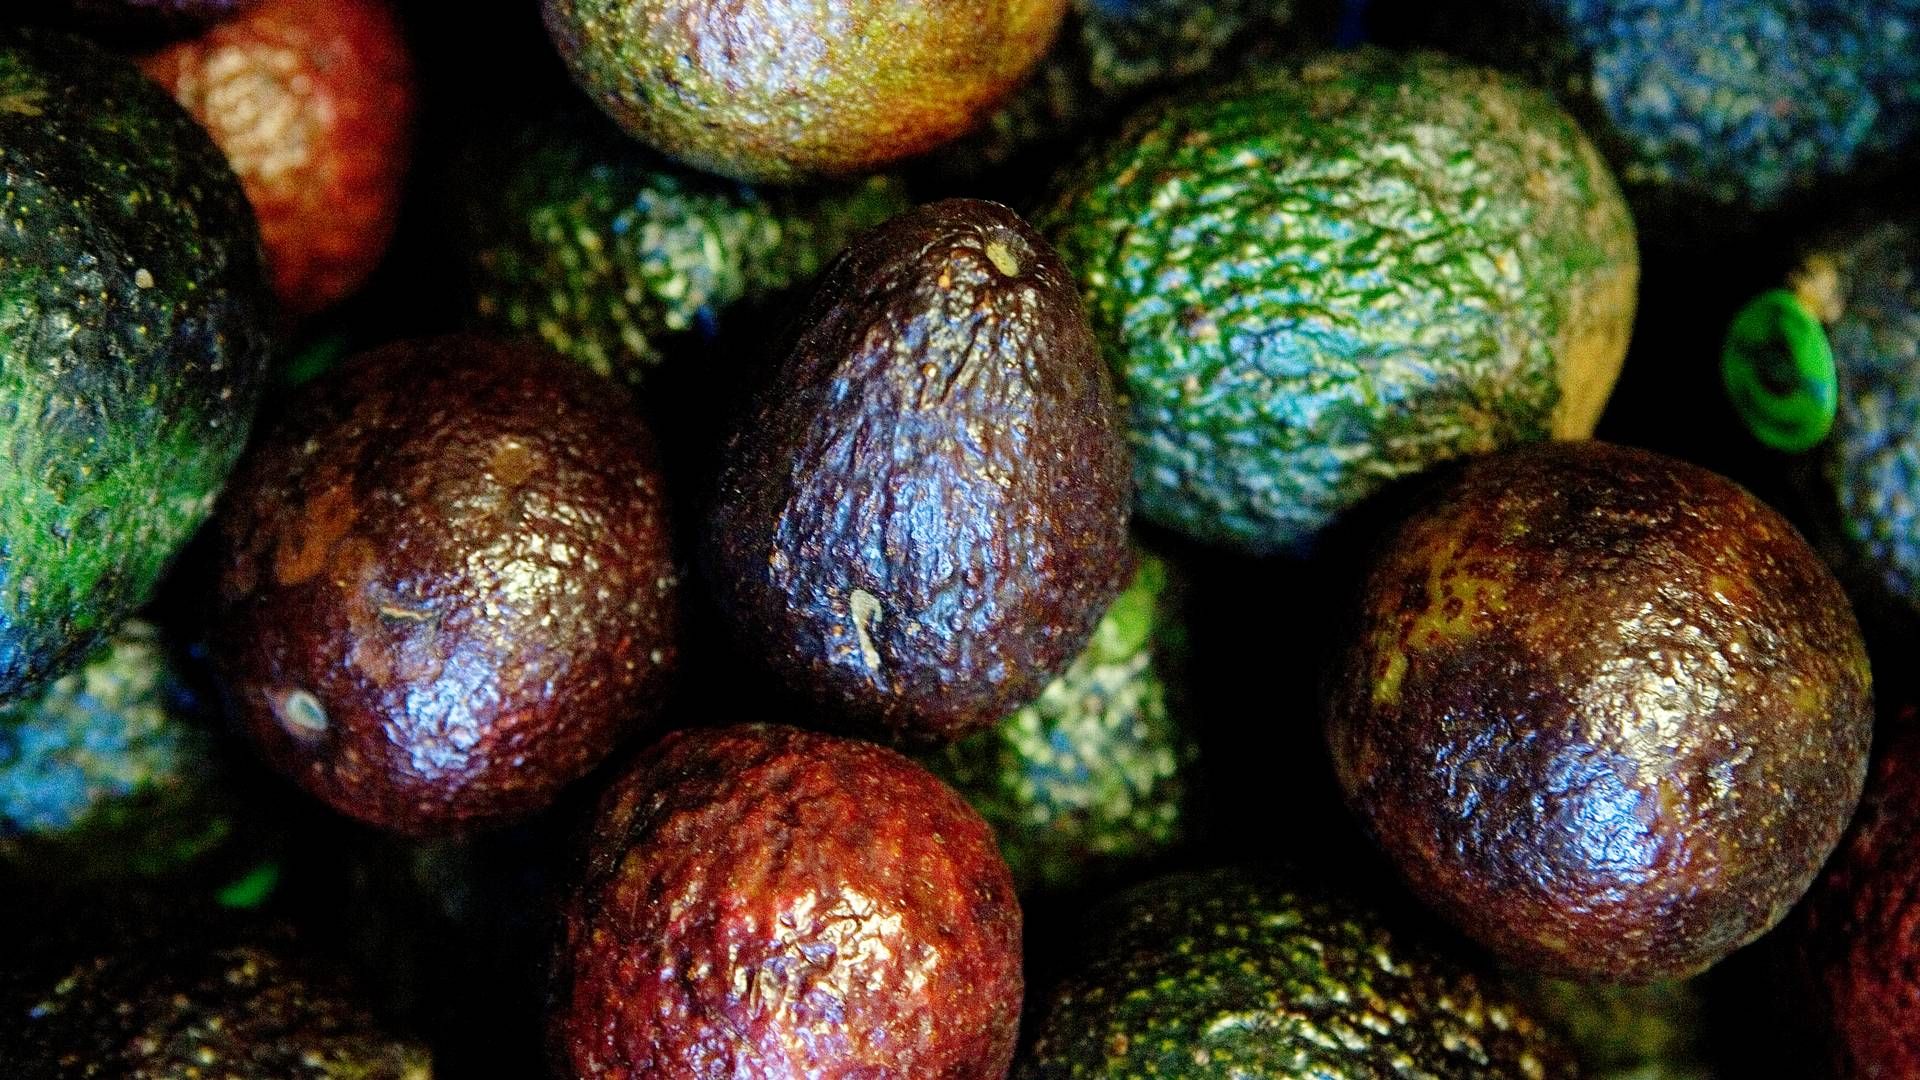 De små frugt- og grøntproducenter, som Freshland i forbindelse med stiftelsen i 2015 blev sat i verden for at agere en hjælpende hånd til, står tilbage med ubetalte regninger. | Foto: Thomas Borberg/Politiken